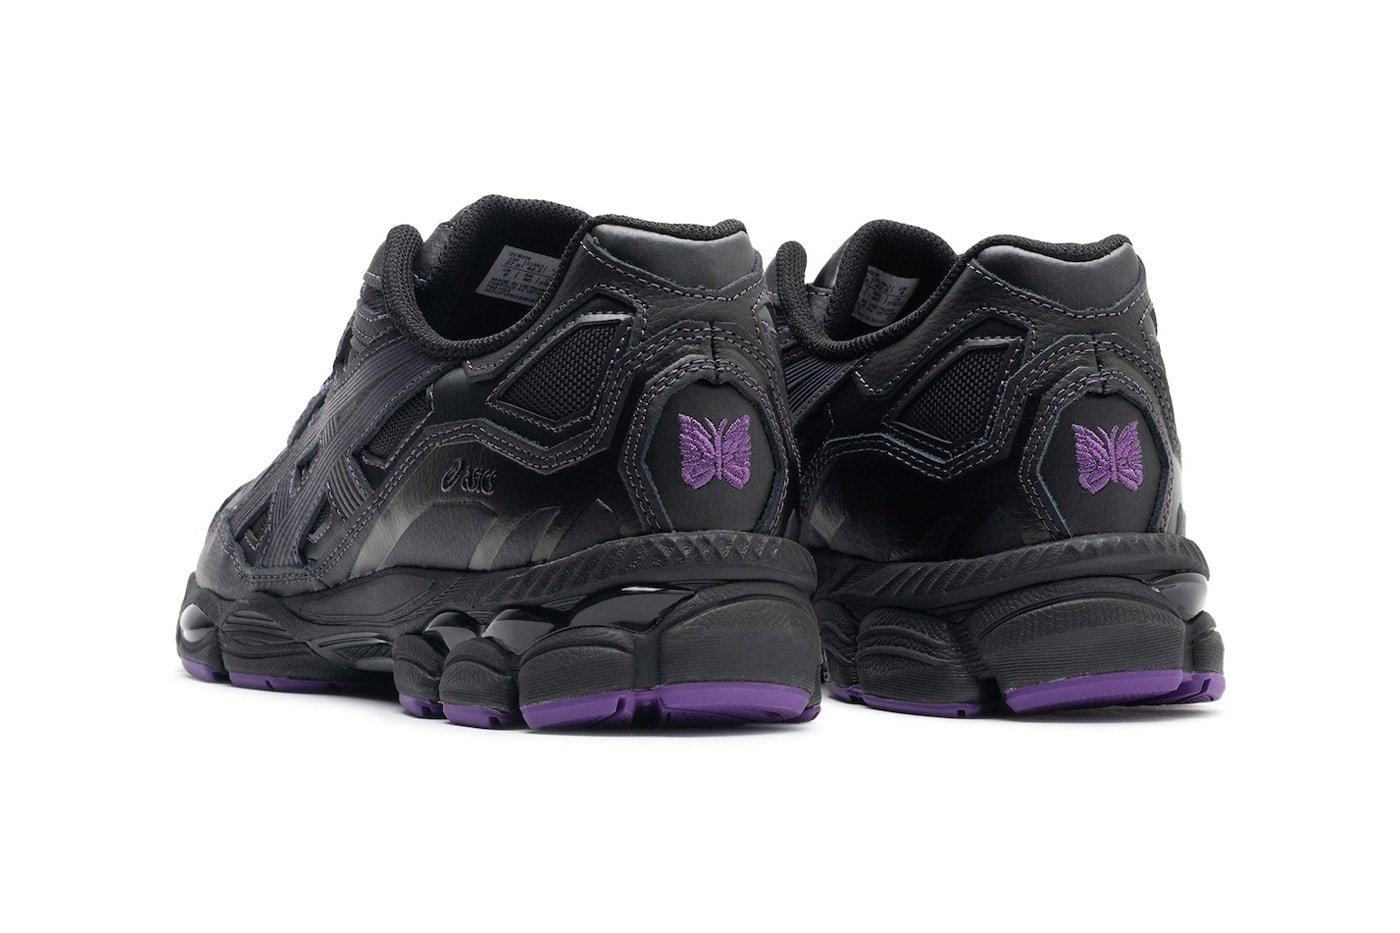 ニードルスとアシックスによる最新コラボGEL-NYC が登場 Official Look at the NEEDLES x ASICS GEL-NYC Collaboration 1201B008-001 release info black purple running shoe footwear